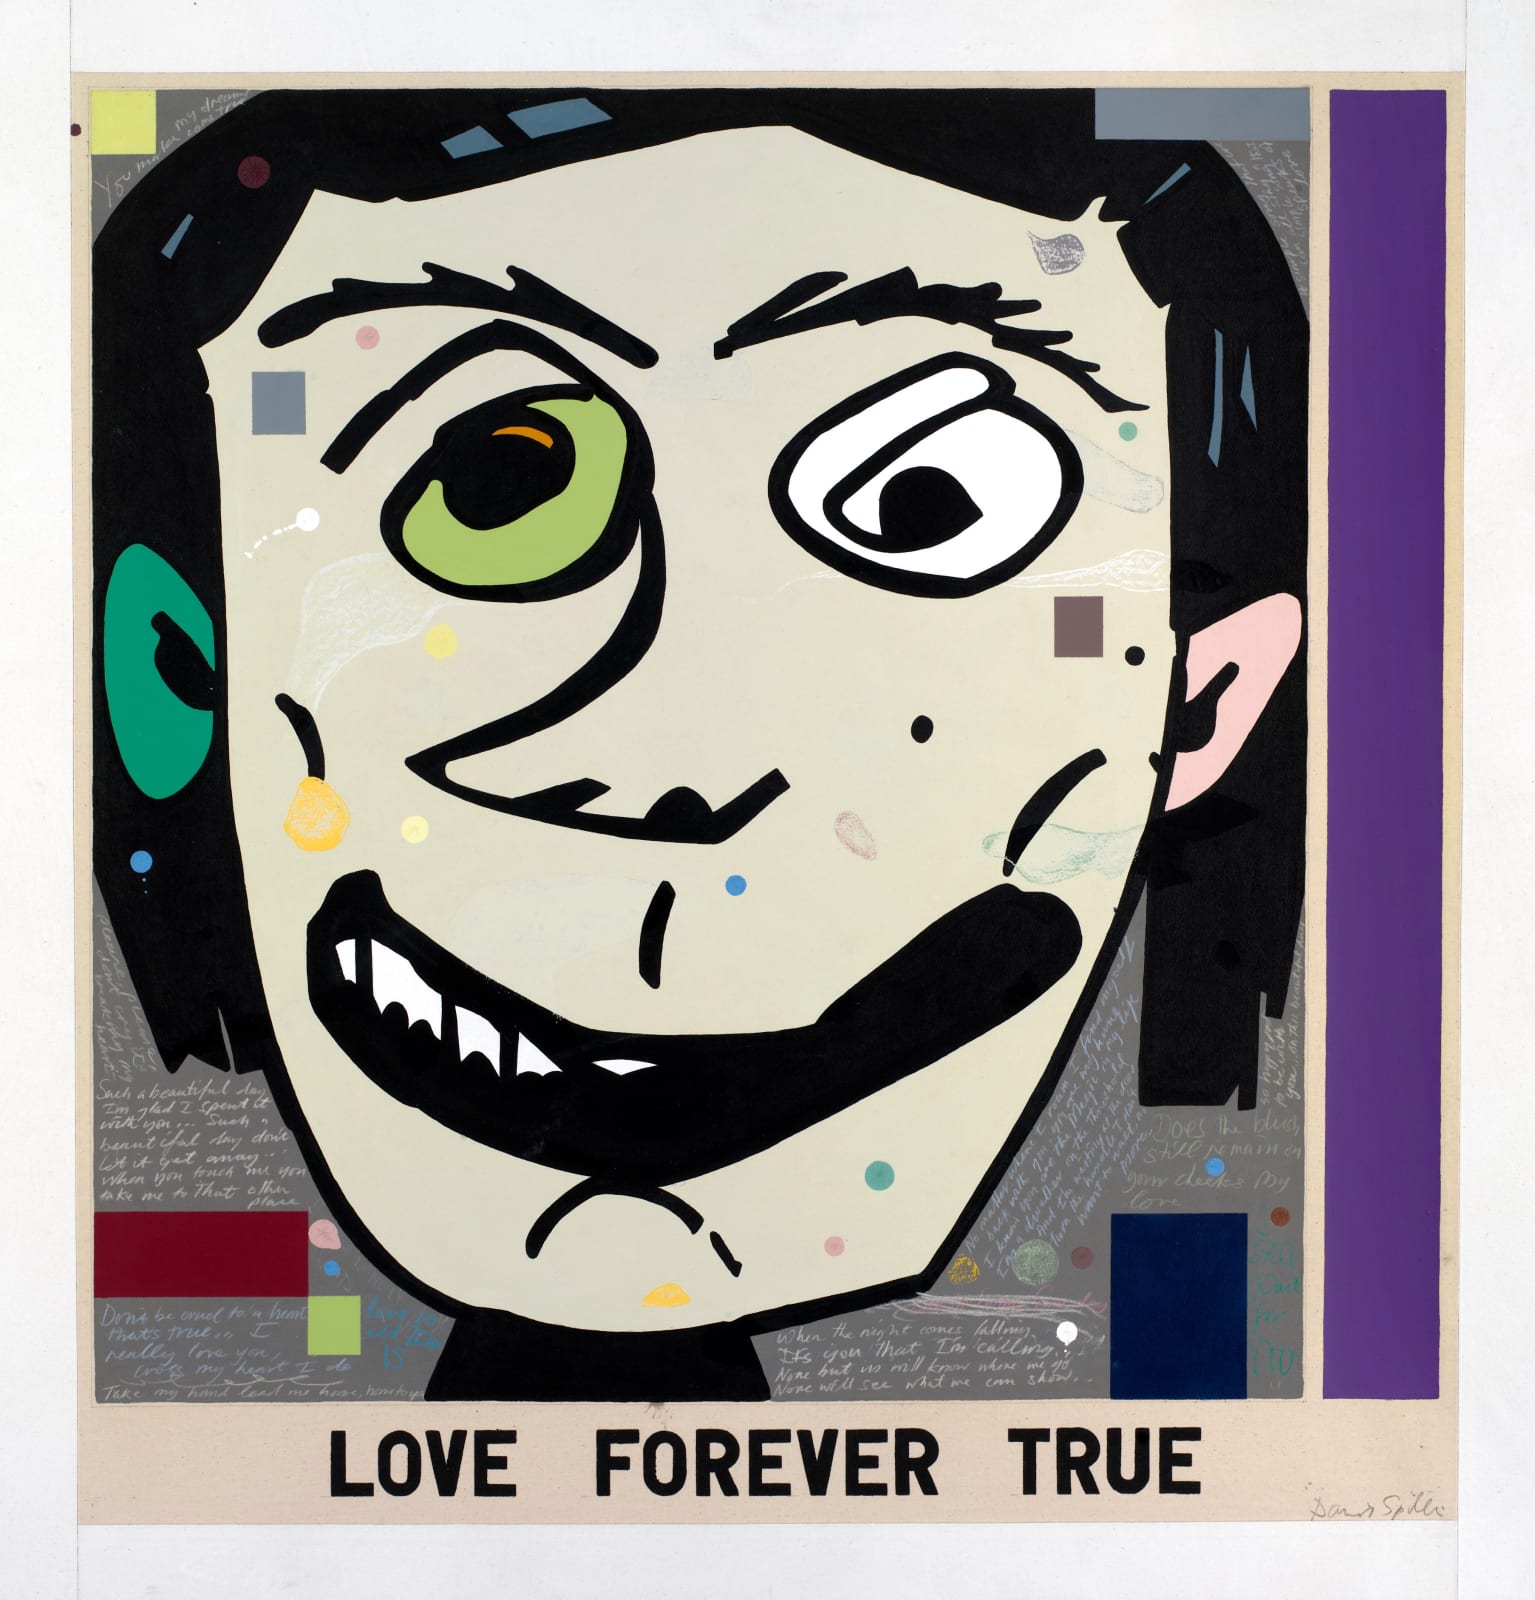 David Spiller, Love Forever True, 2006